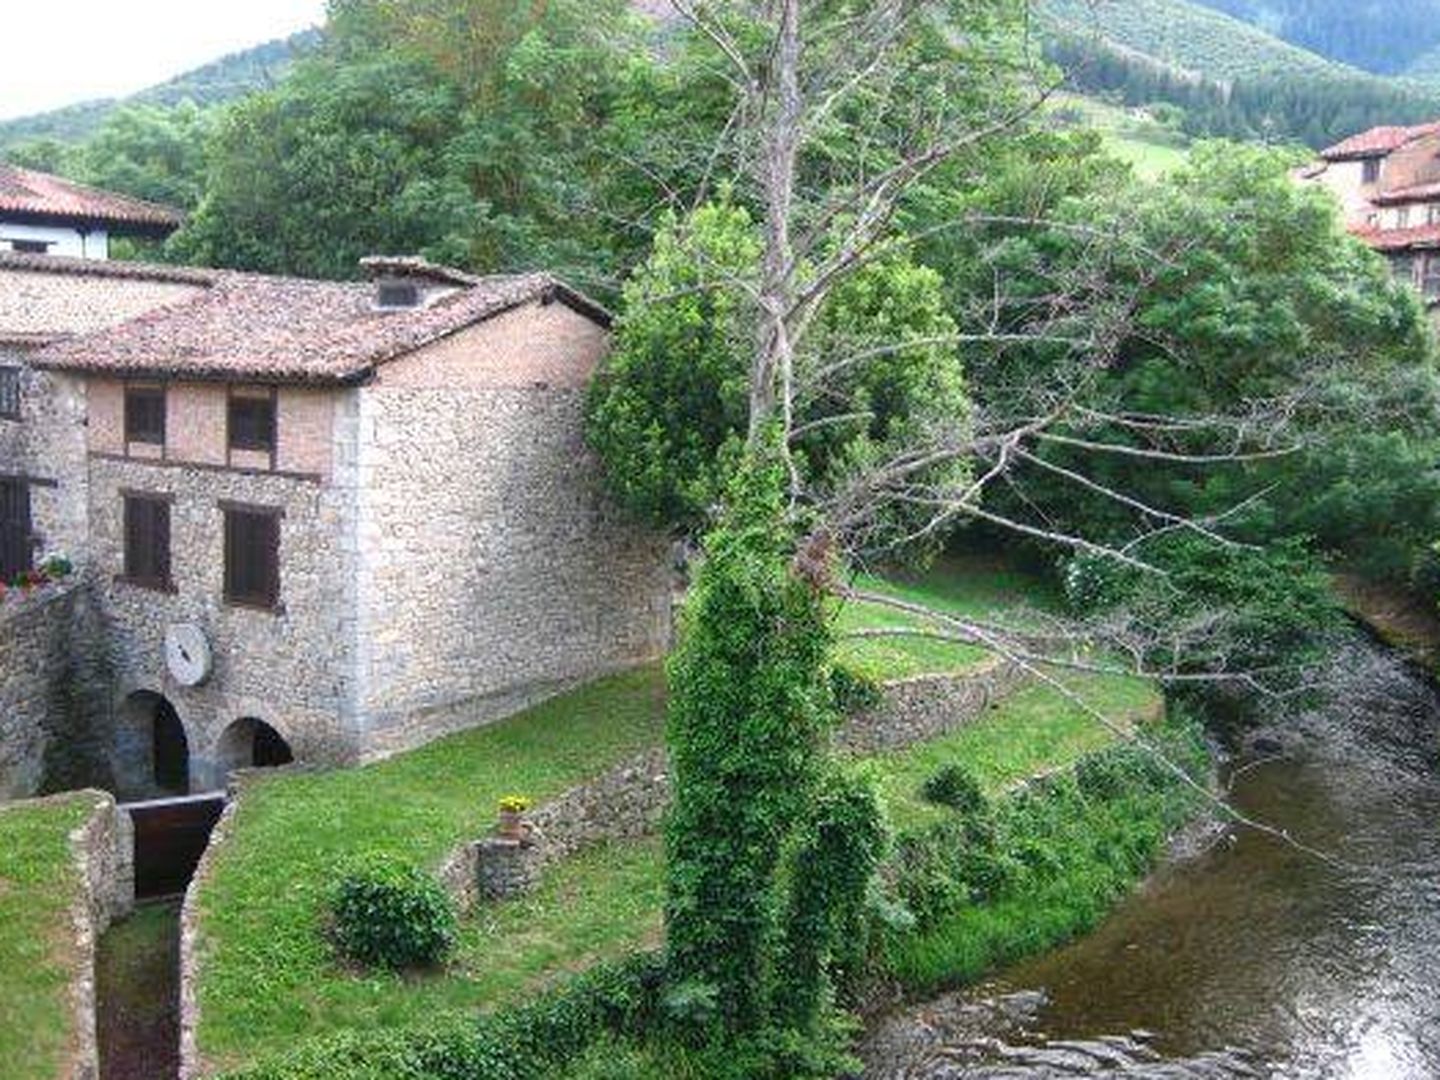 Potes siempre es un destino preferente. (Foto: Turismo de Cantabria)